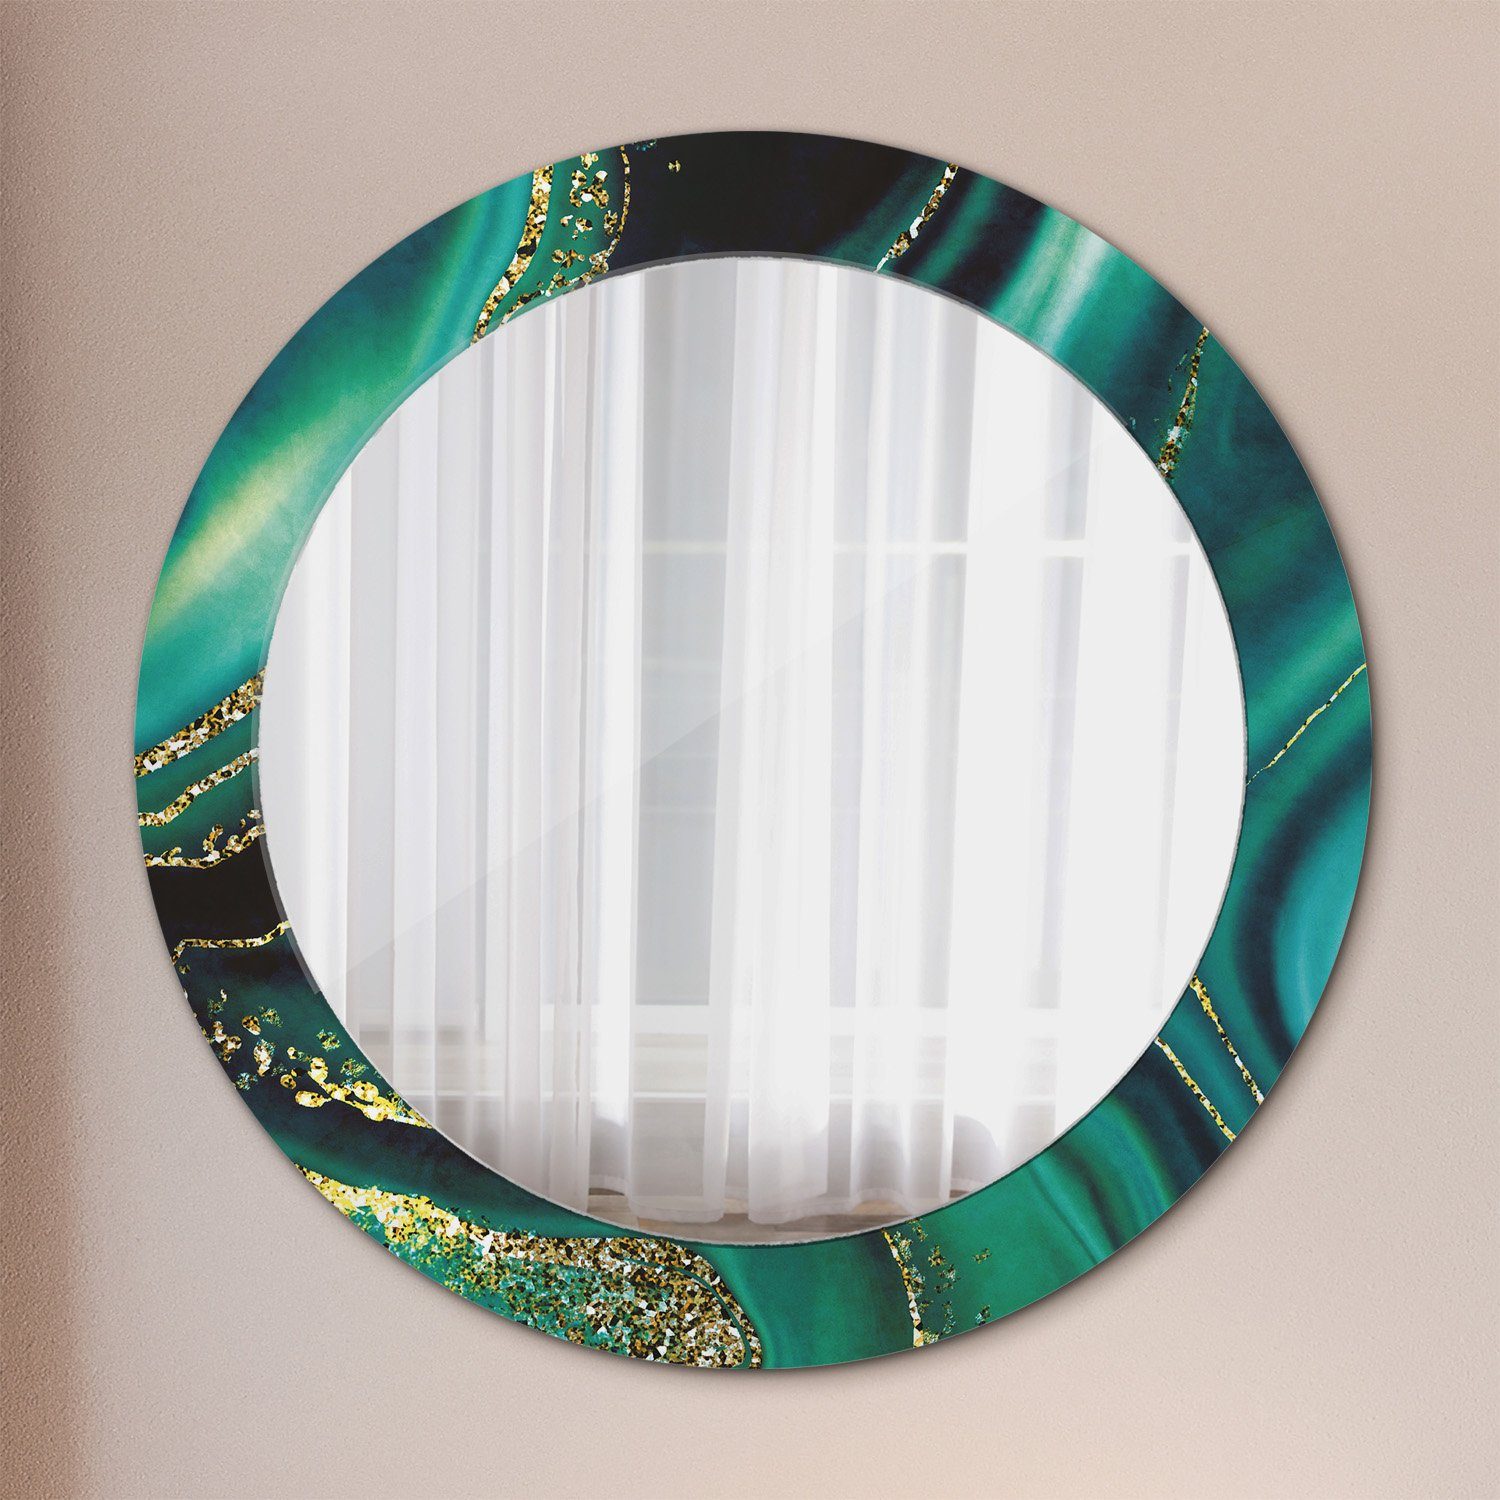 Tulup Dekospiegel mit Aufdruck Badezimmerspiegel Wandspiegel Rundspiegel Rund: Ø70 cm, Wohnzimmer Spiegel Smaragd Grün